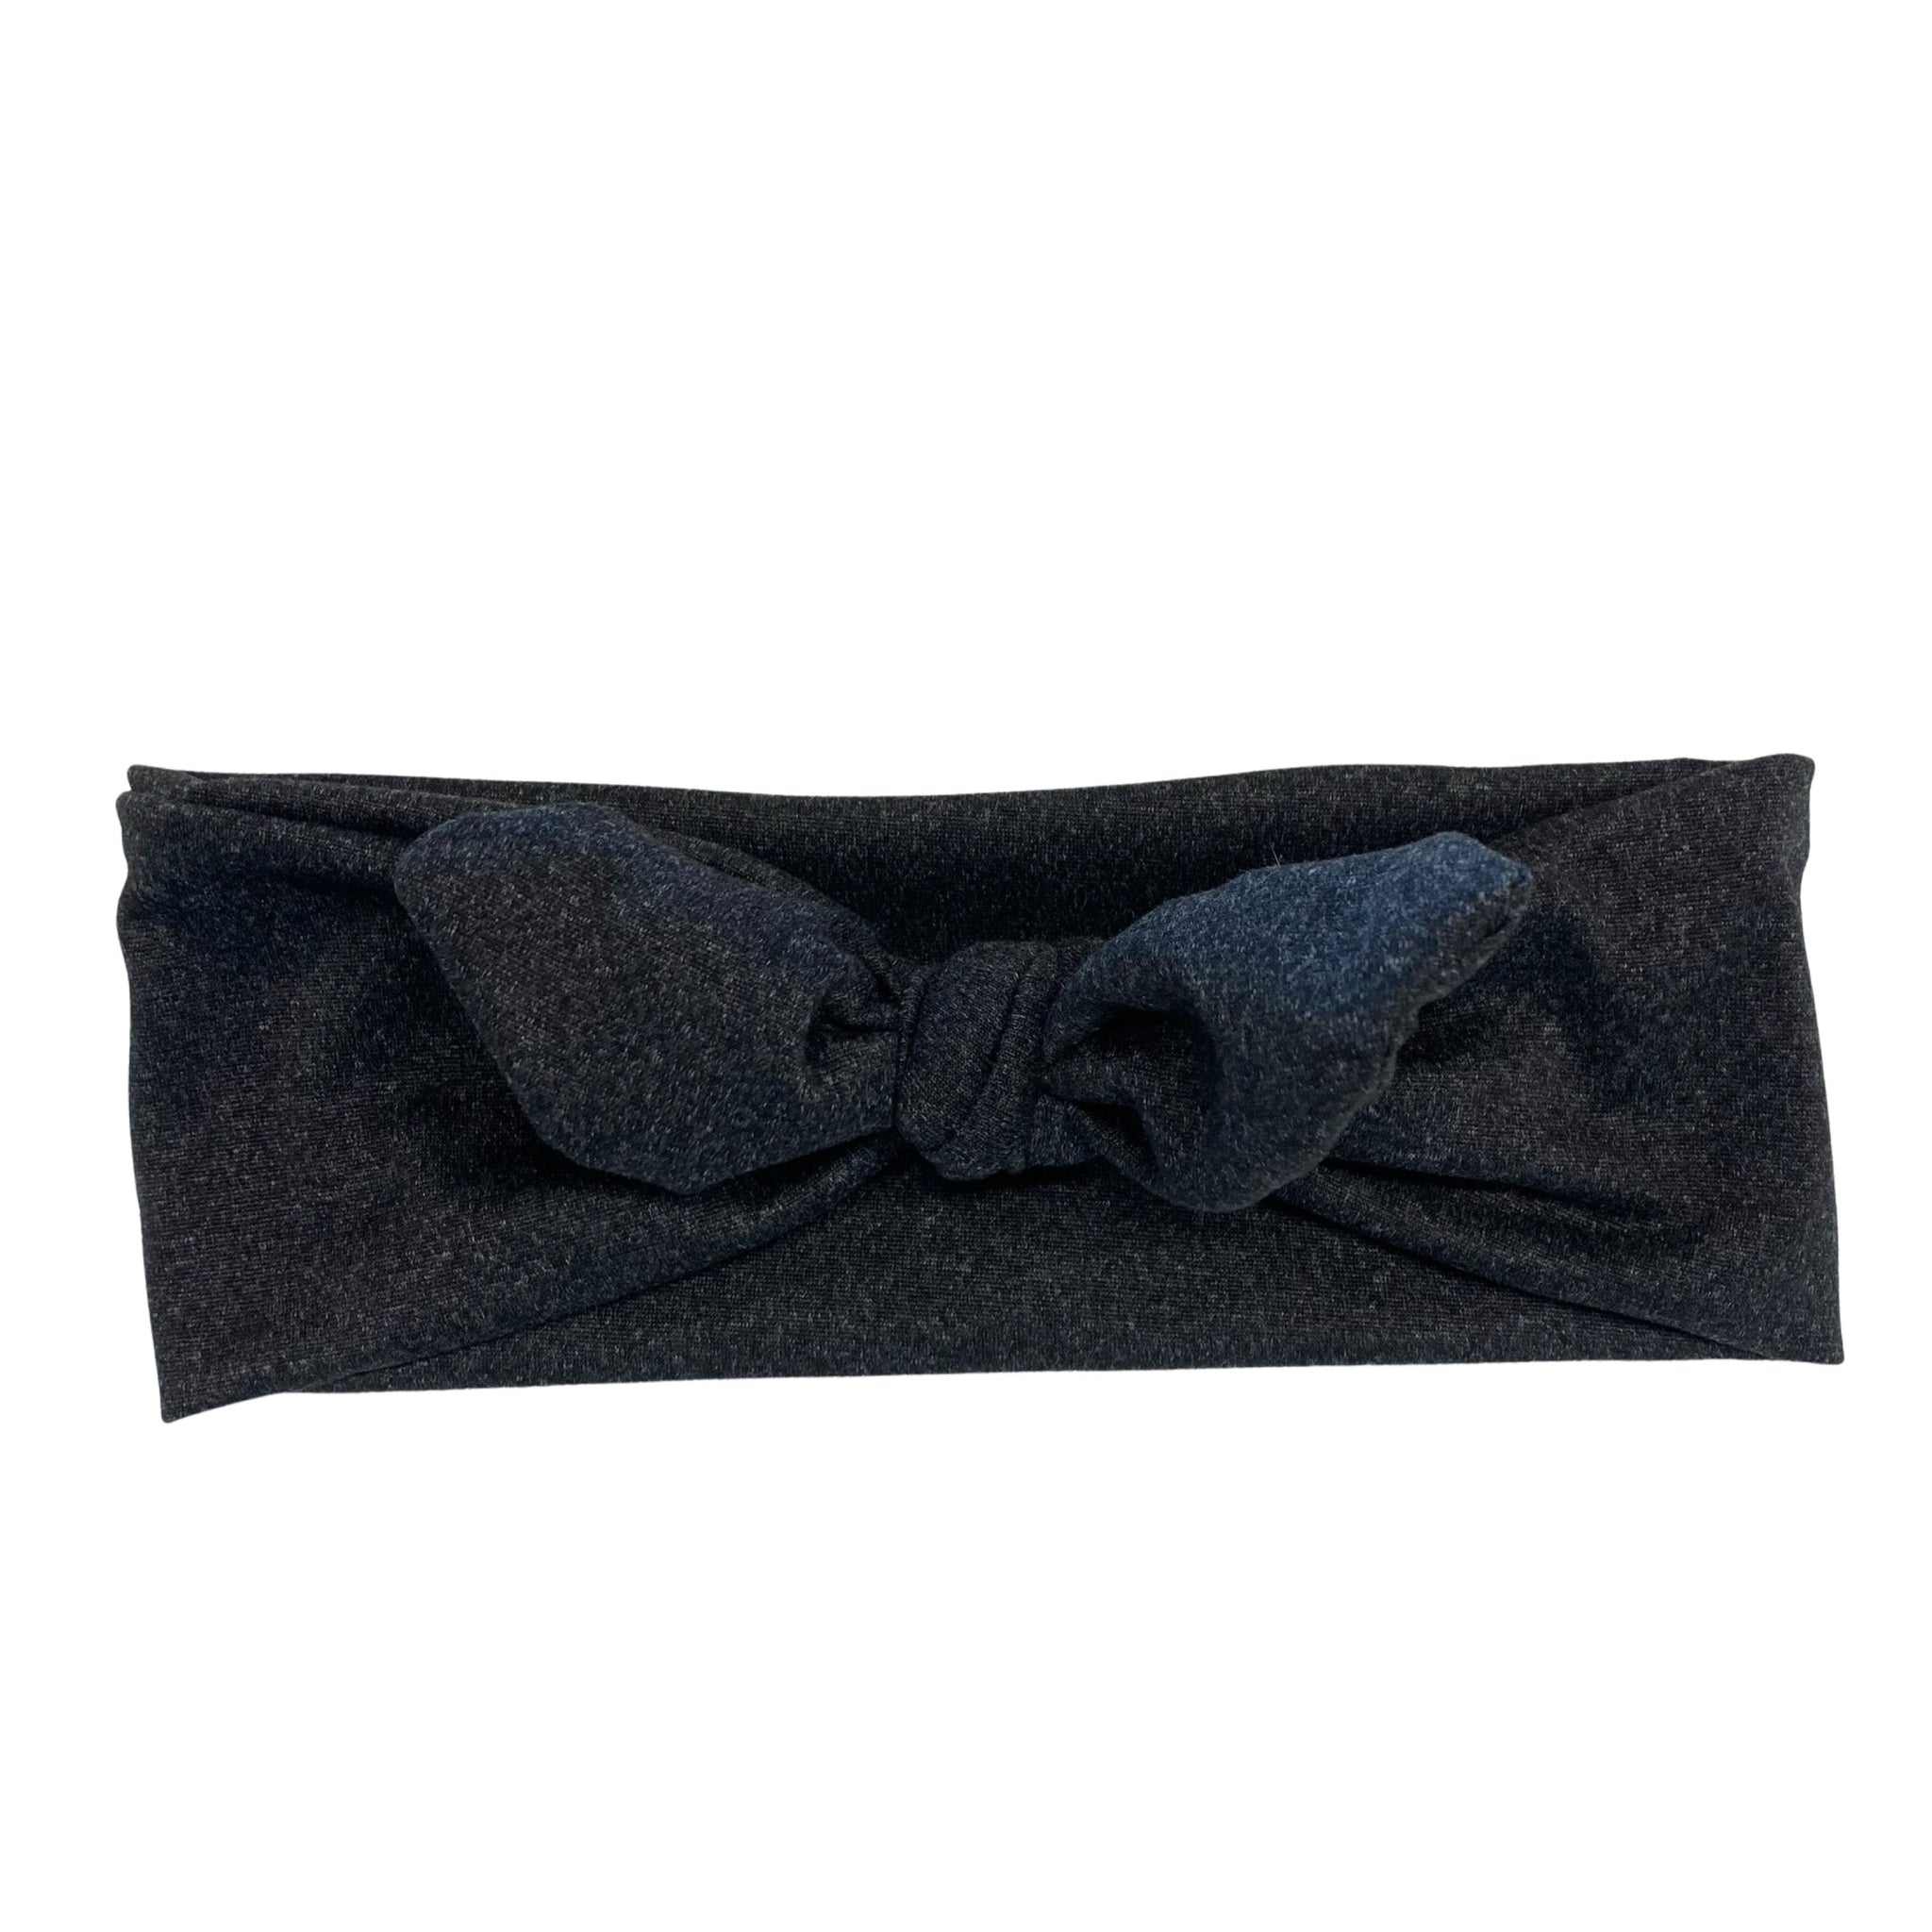 Vintage Black Tie Headband